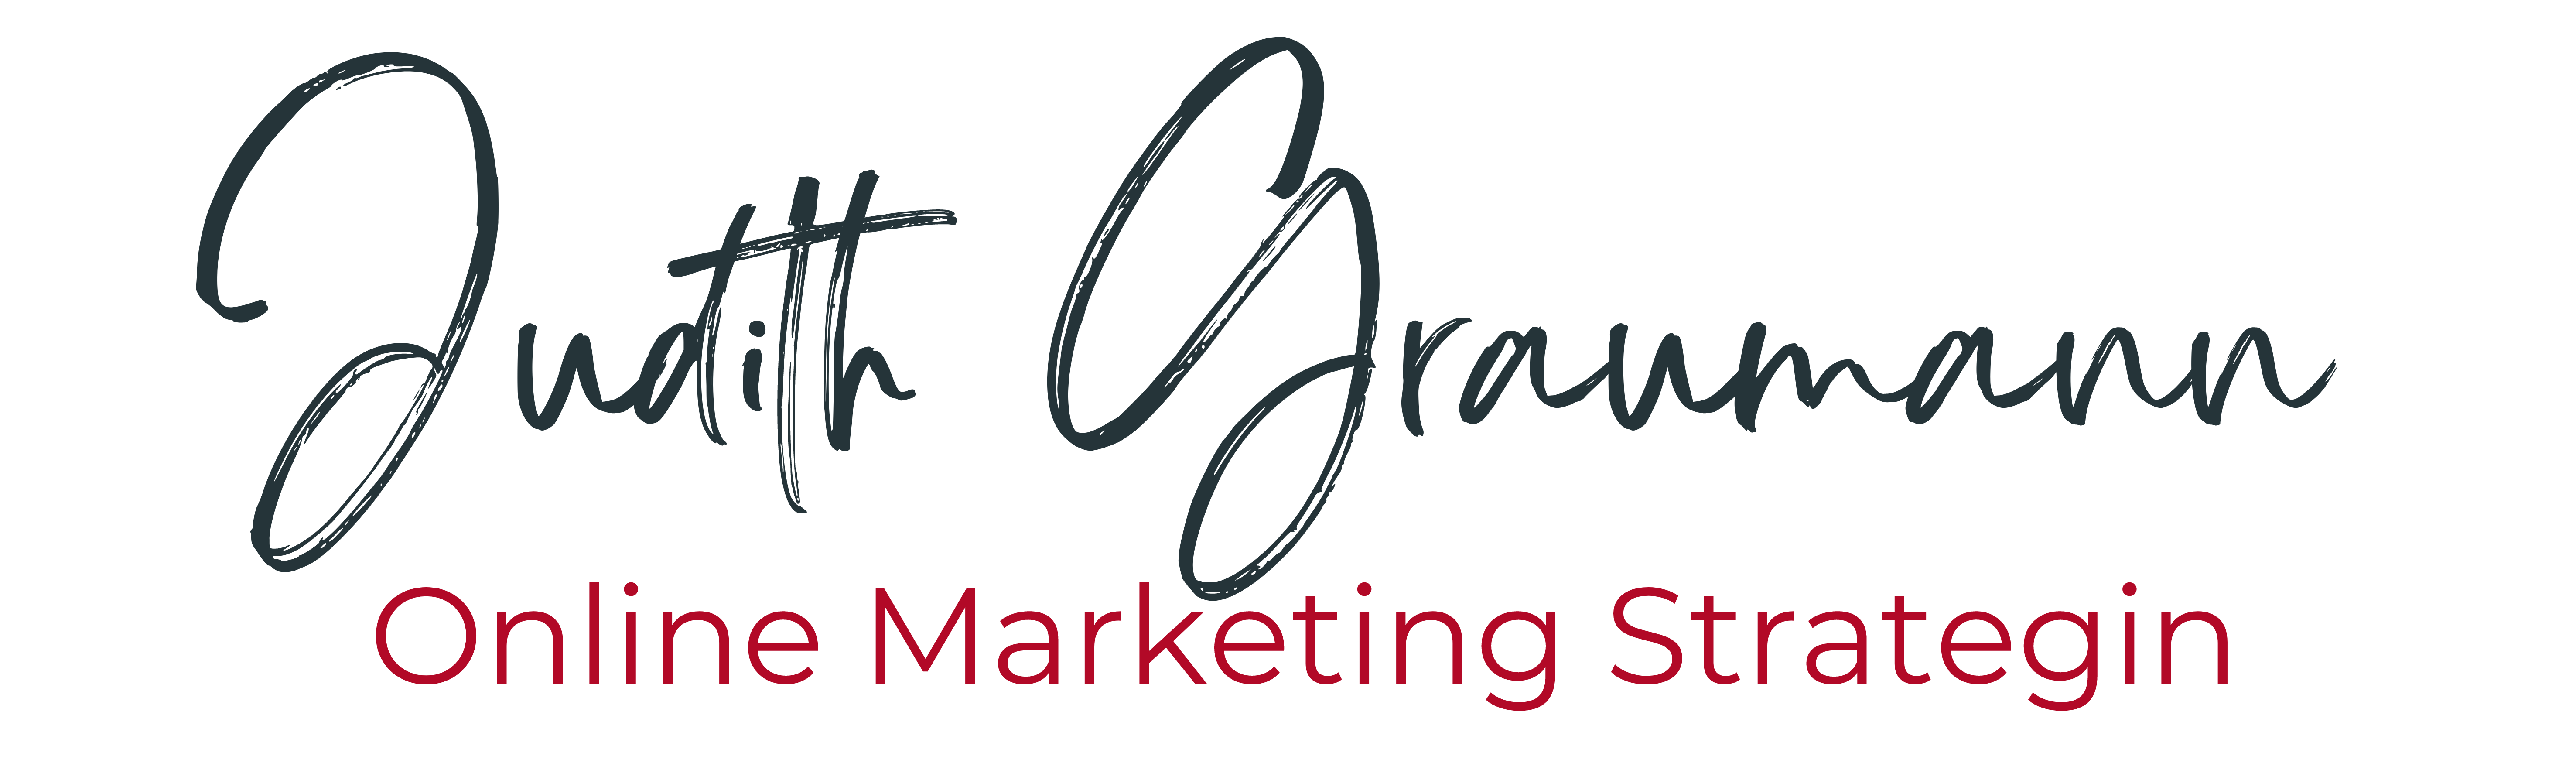 Judith Graumann | Online Marketing Strategin